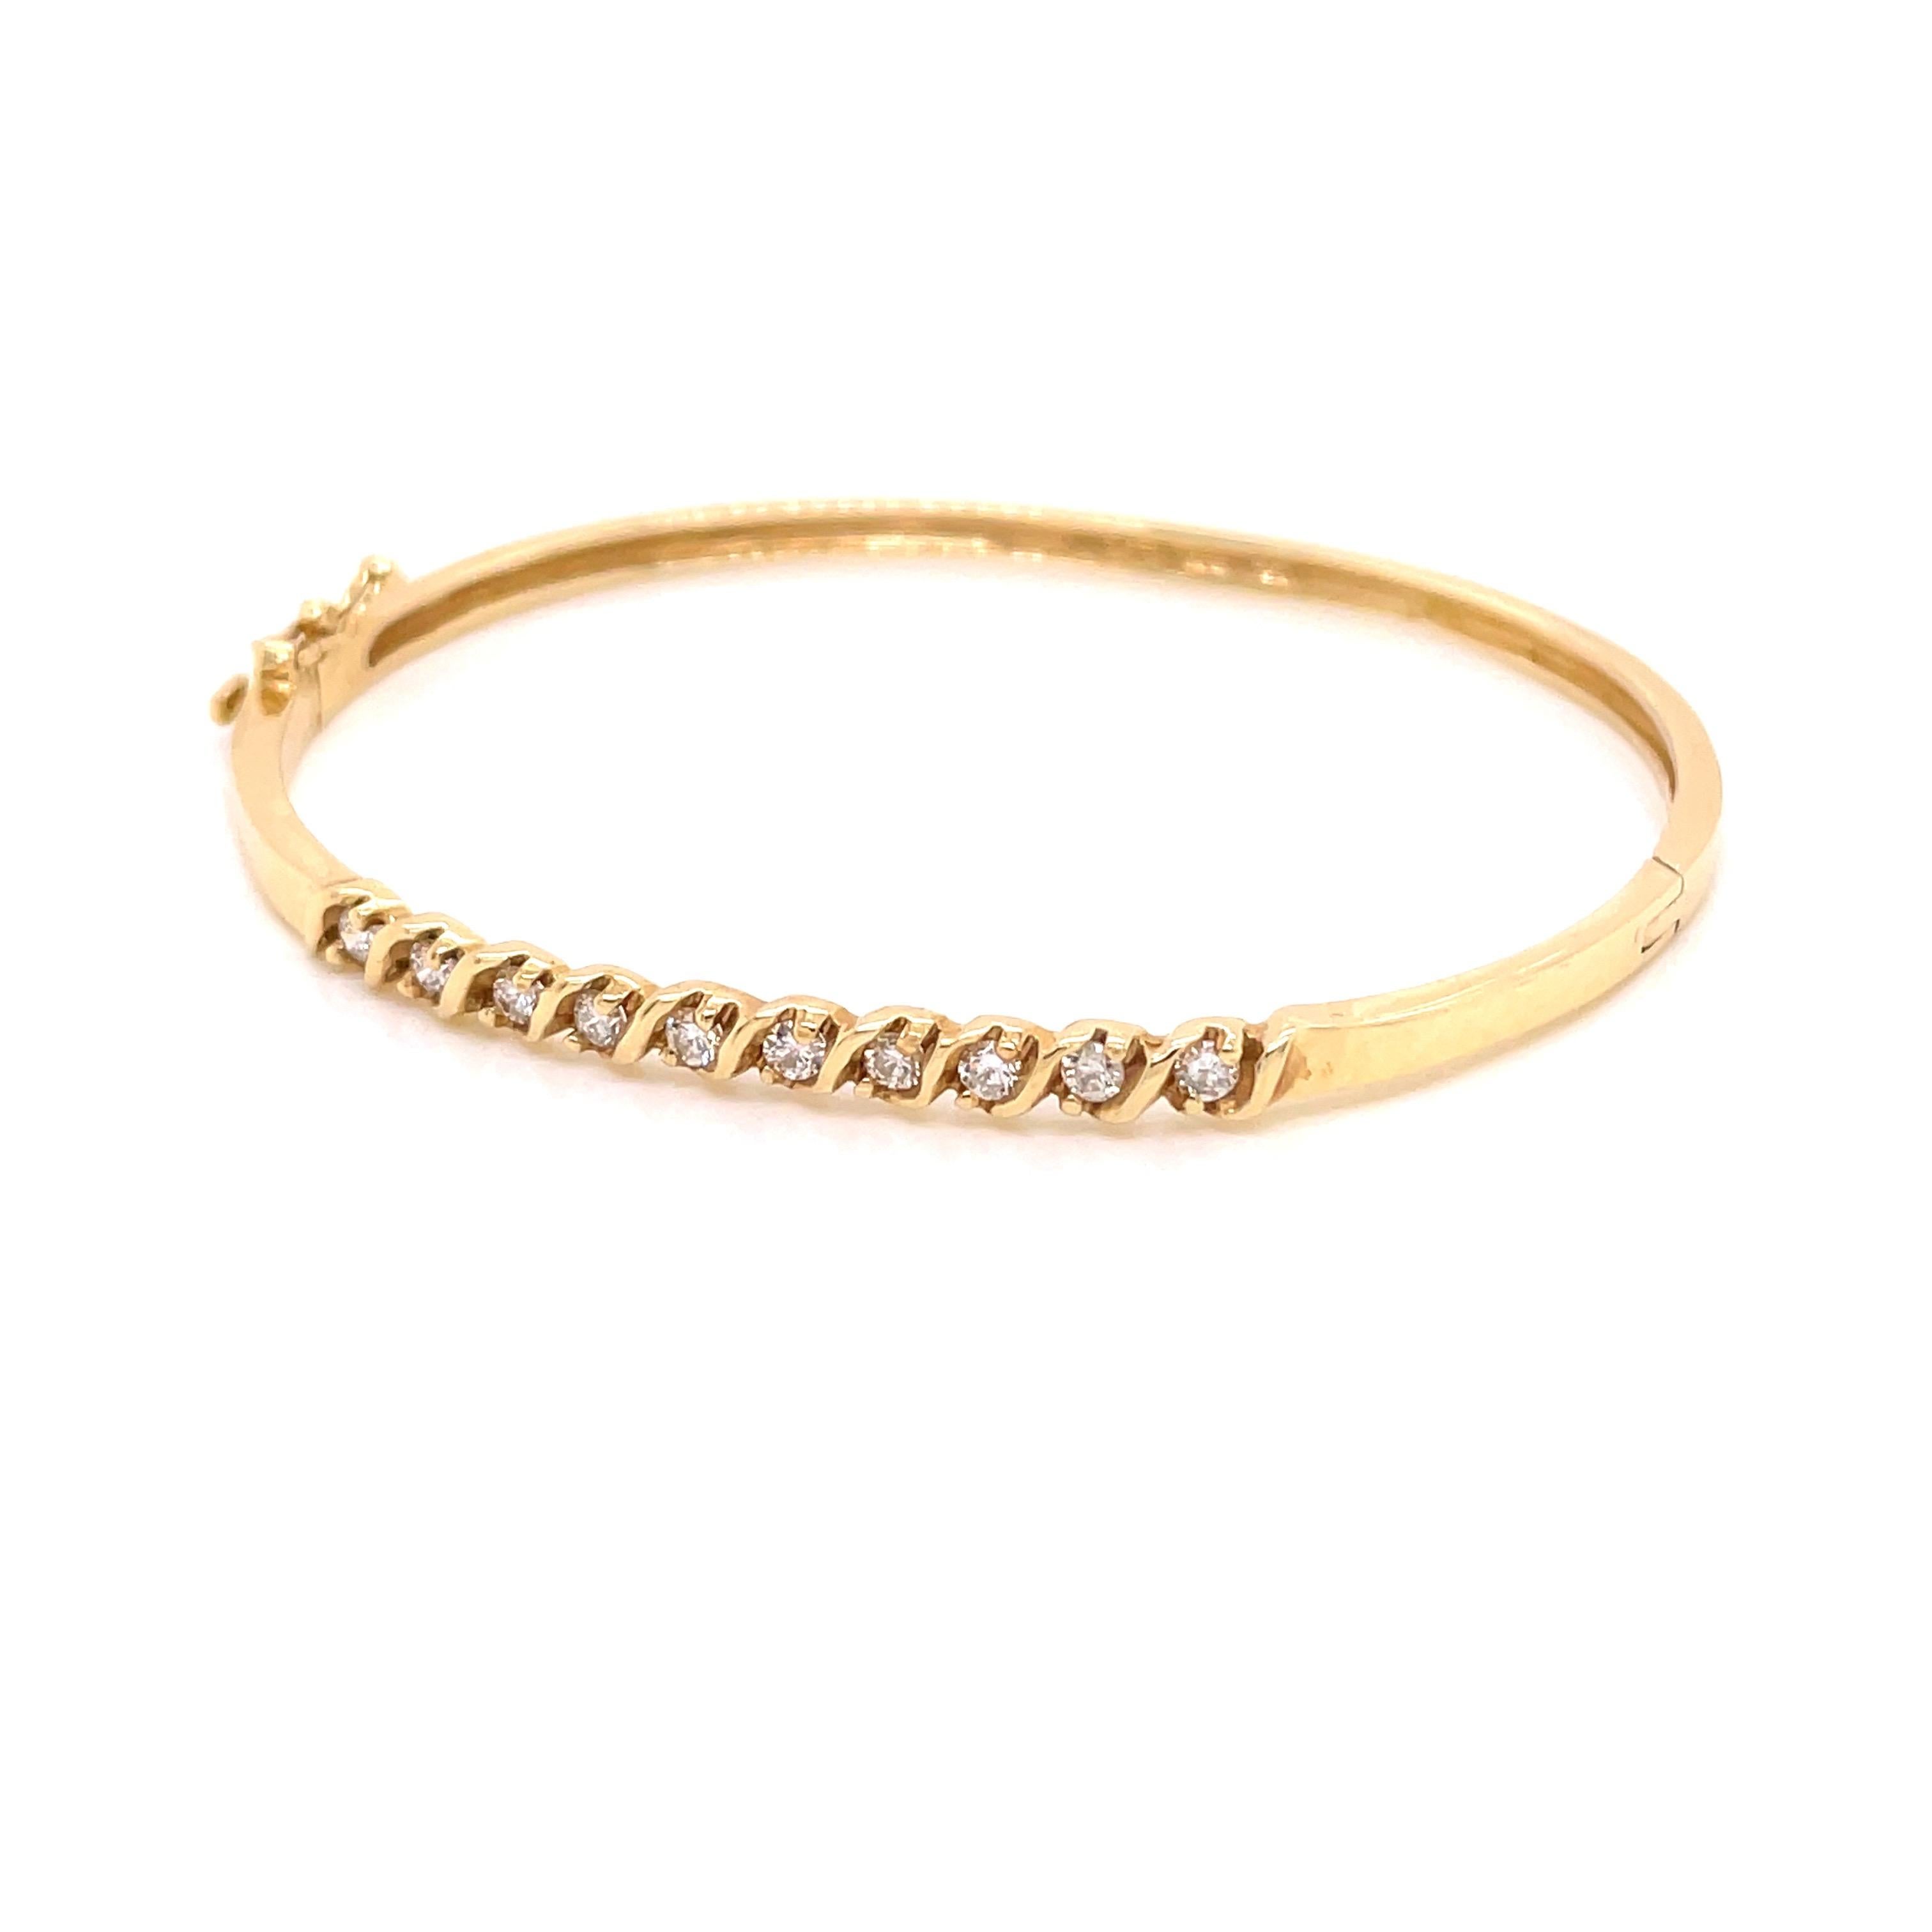 bracelet en or jaune 14K avec diamant .47ct - Le bracelet est serti de 10 diamants ronds de taille brillant pesant .47ct de couleur G - H et de pureté VS2 - SI1 avec une barre en forme de 'S'. La largeur du bracelet en haut est de 3 mm et s'amincit